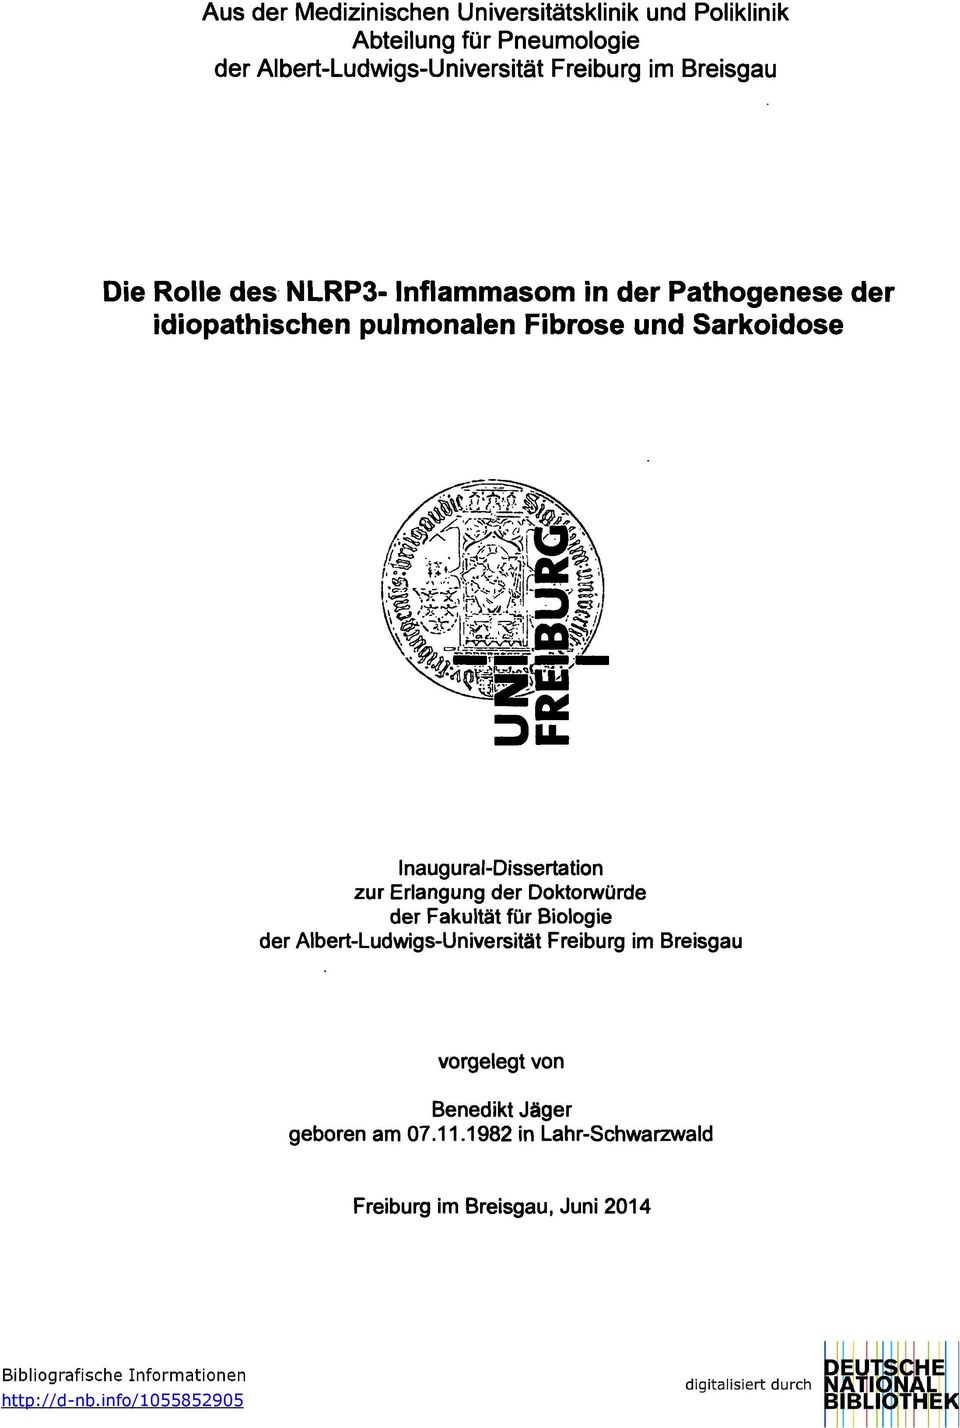 Inaugural-Dissertation zur Erlangung der Doktorwürde der Fakultät für Biologie der Albert-Ludwigs-Universität Freiburg im